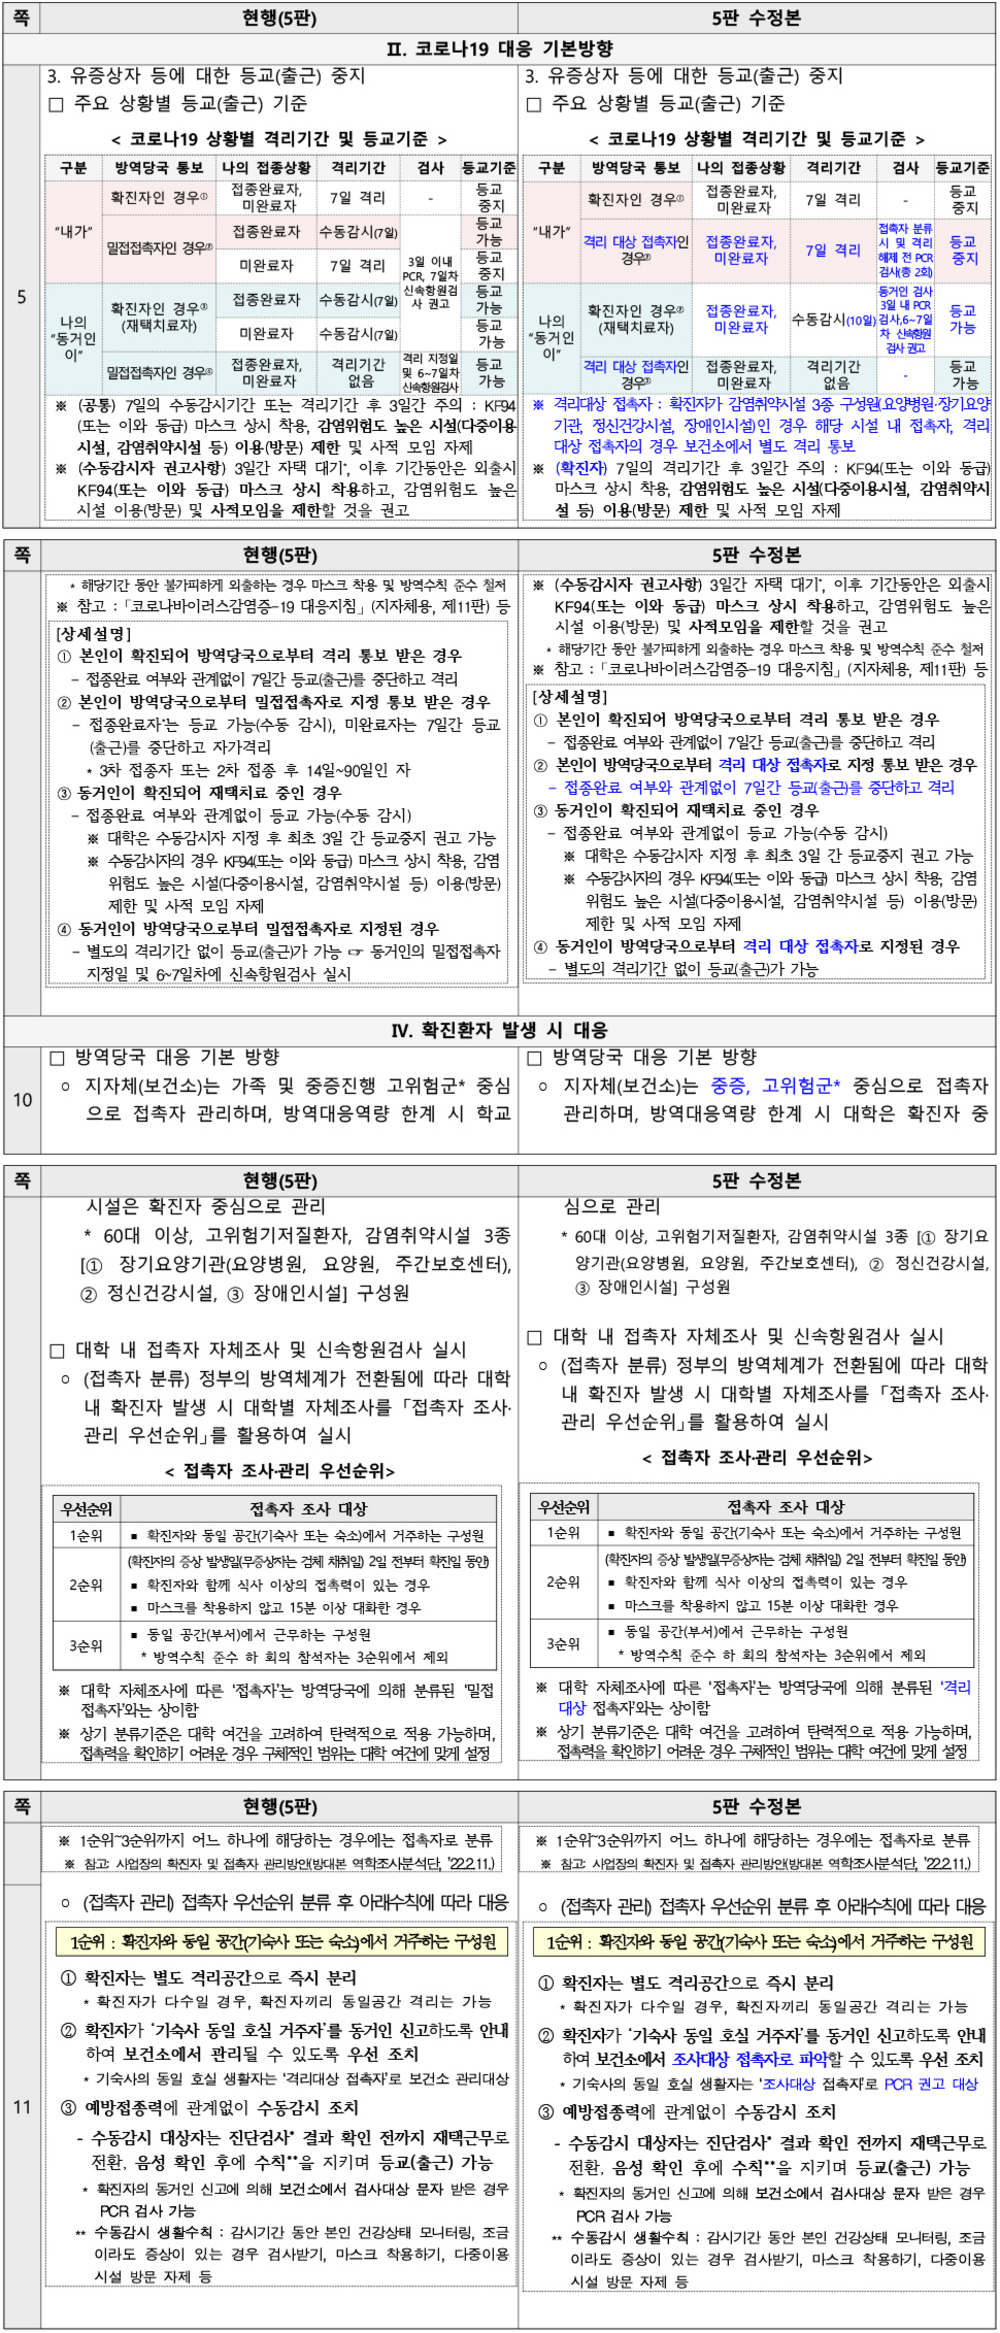 「대학 코로나19 감염예방 관리 안내(제5판 수정본)」 수정전후대비표